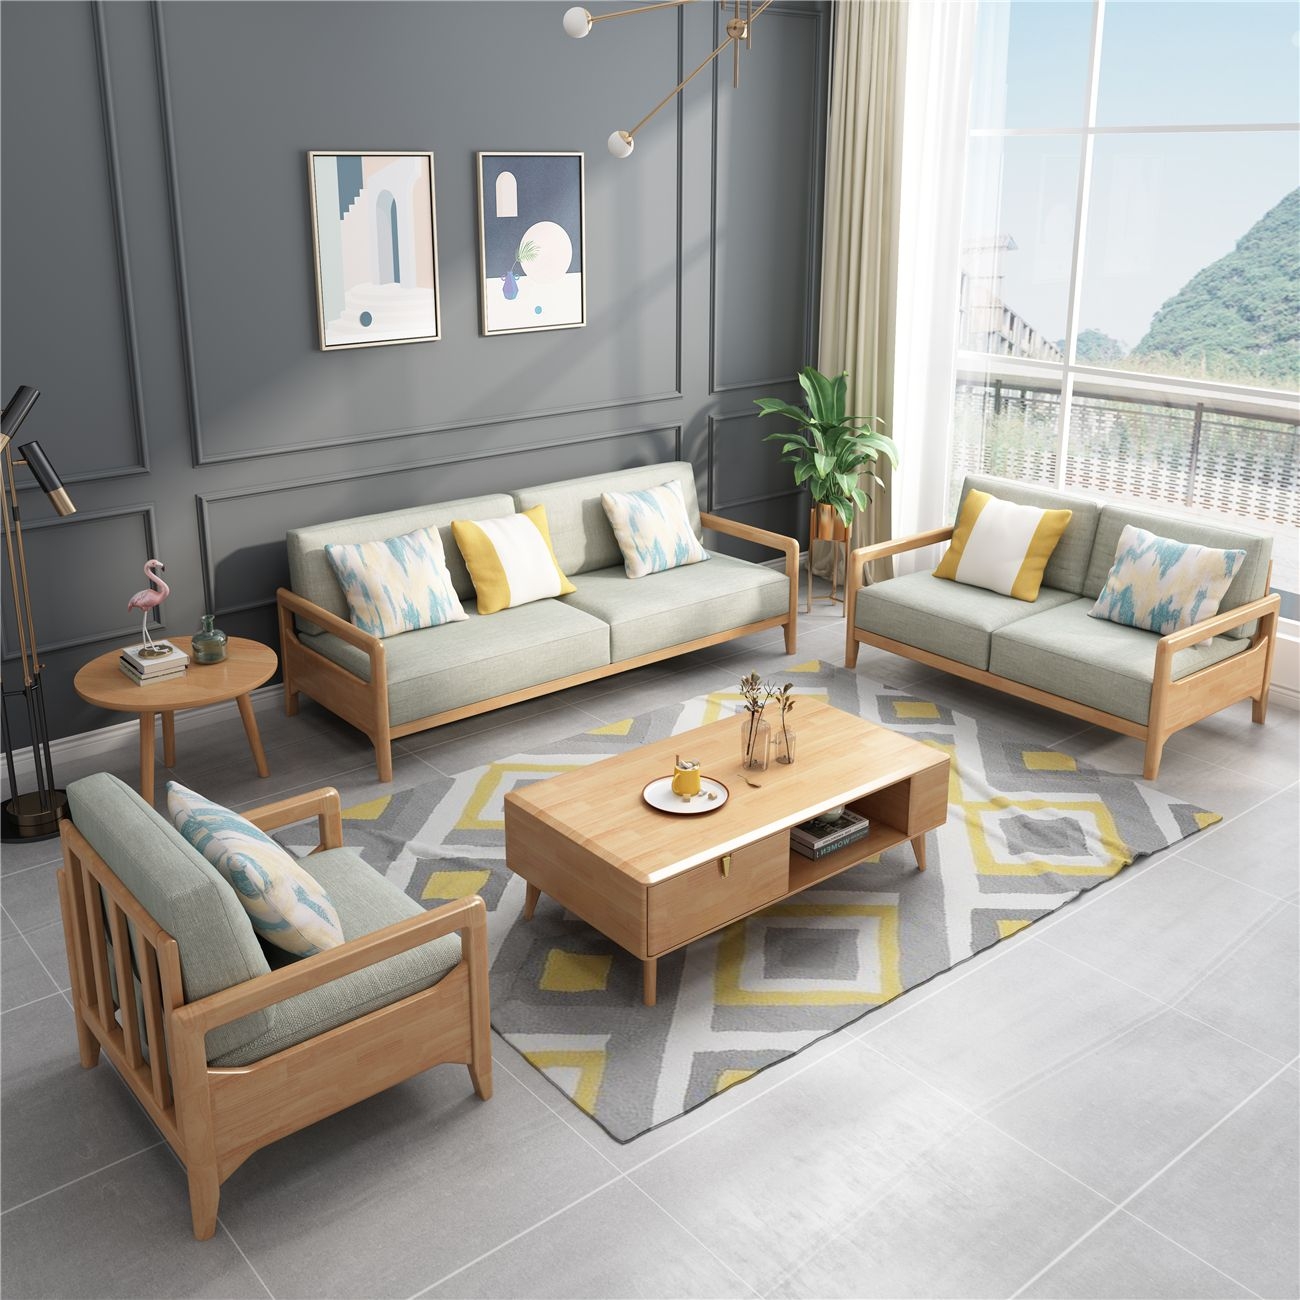 家居】大北欧原木色系列   橡胶木框架  棉麻布面料   客厅组合沙发